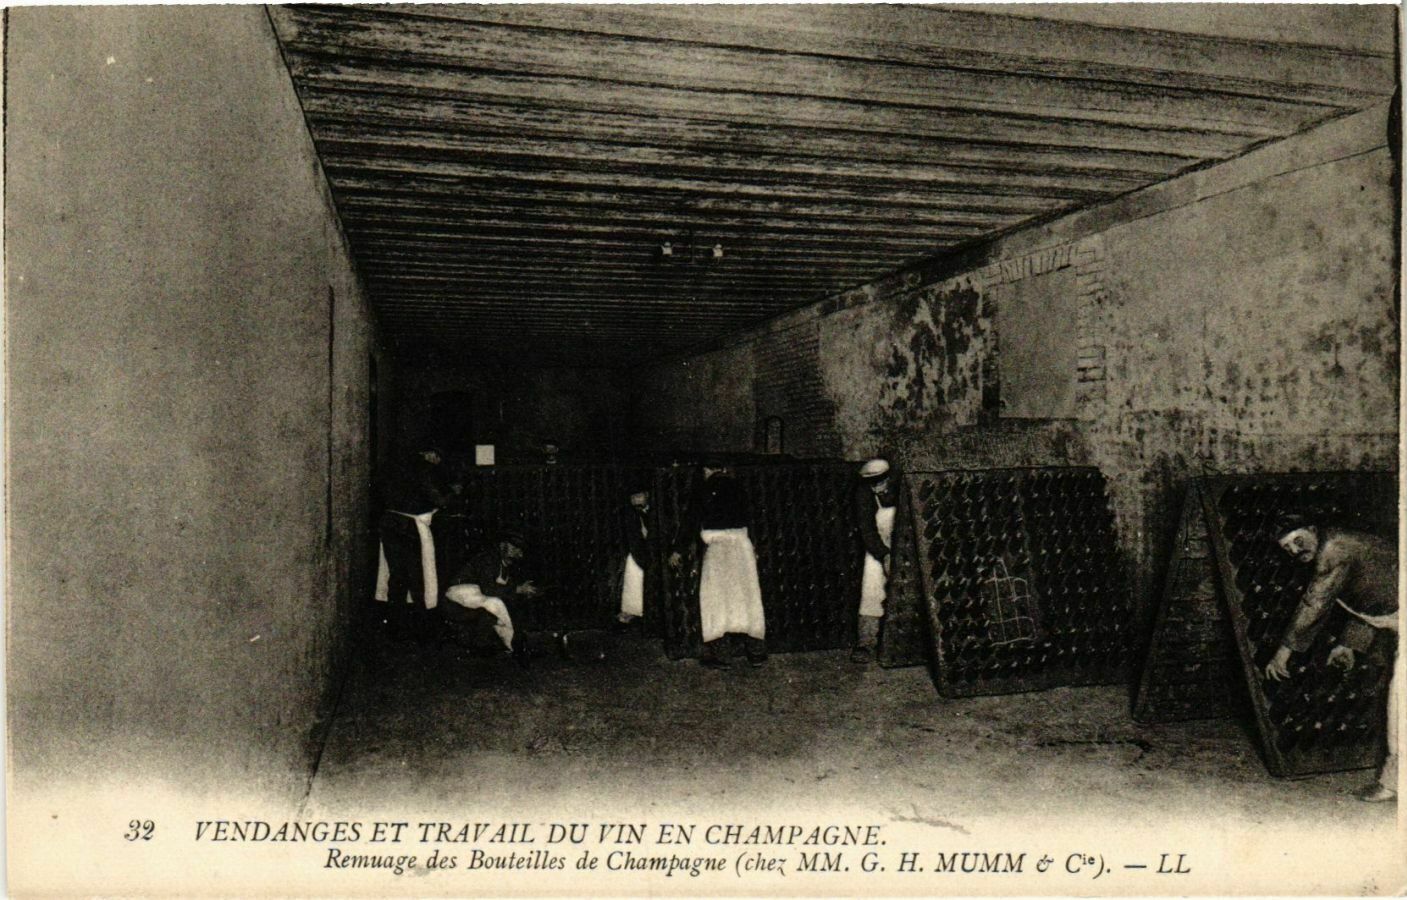 CPA G.H.MUMM Vendages et Travail du Vin in Champagne. Stir (574779)